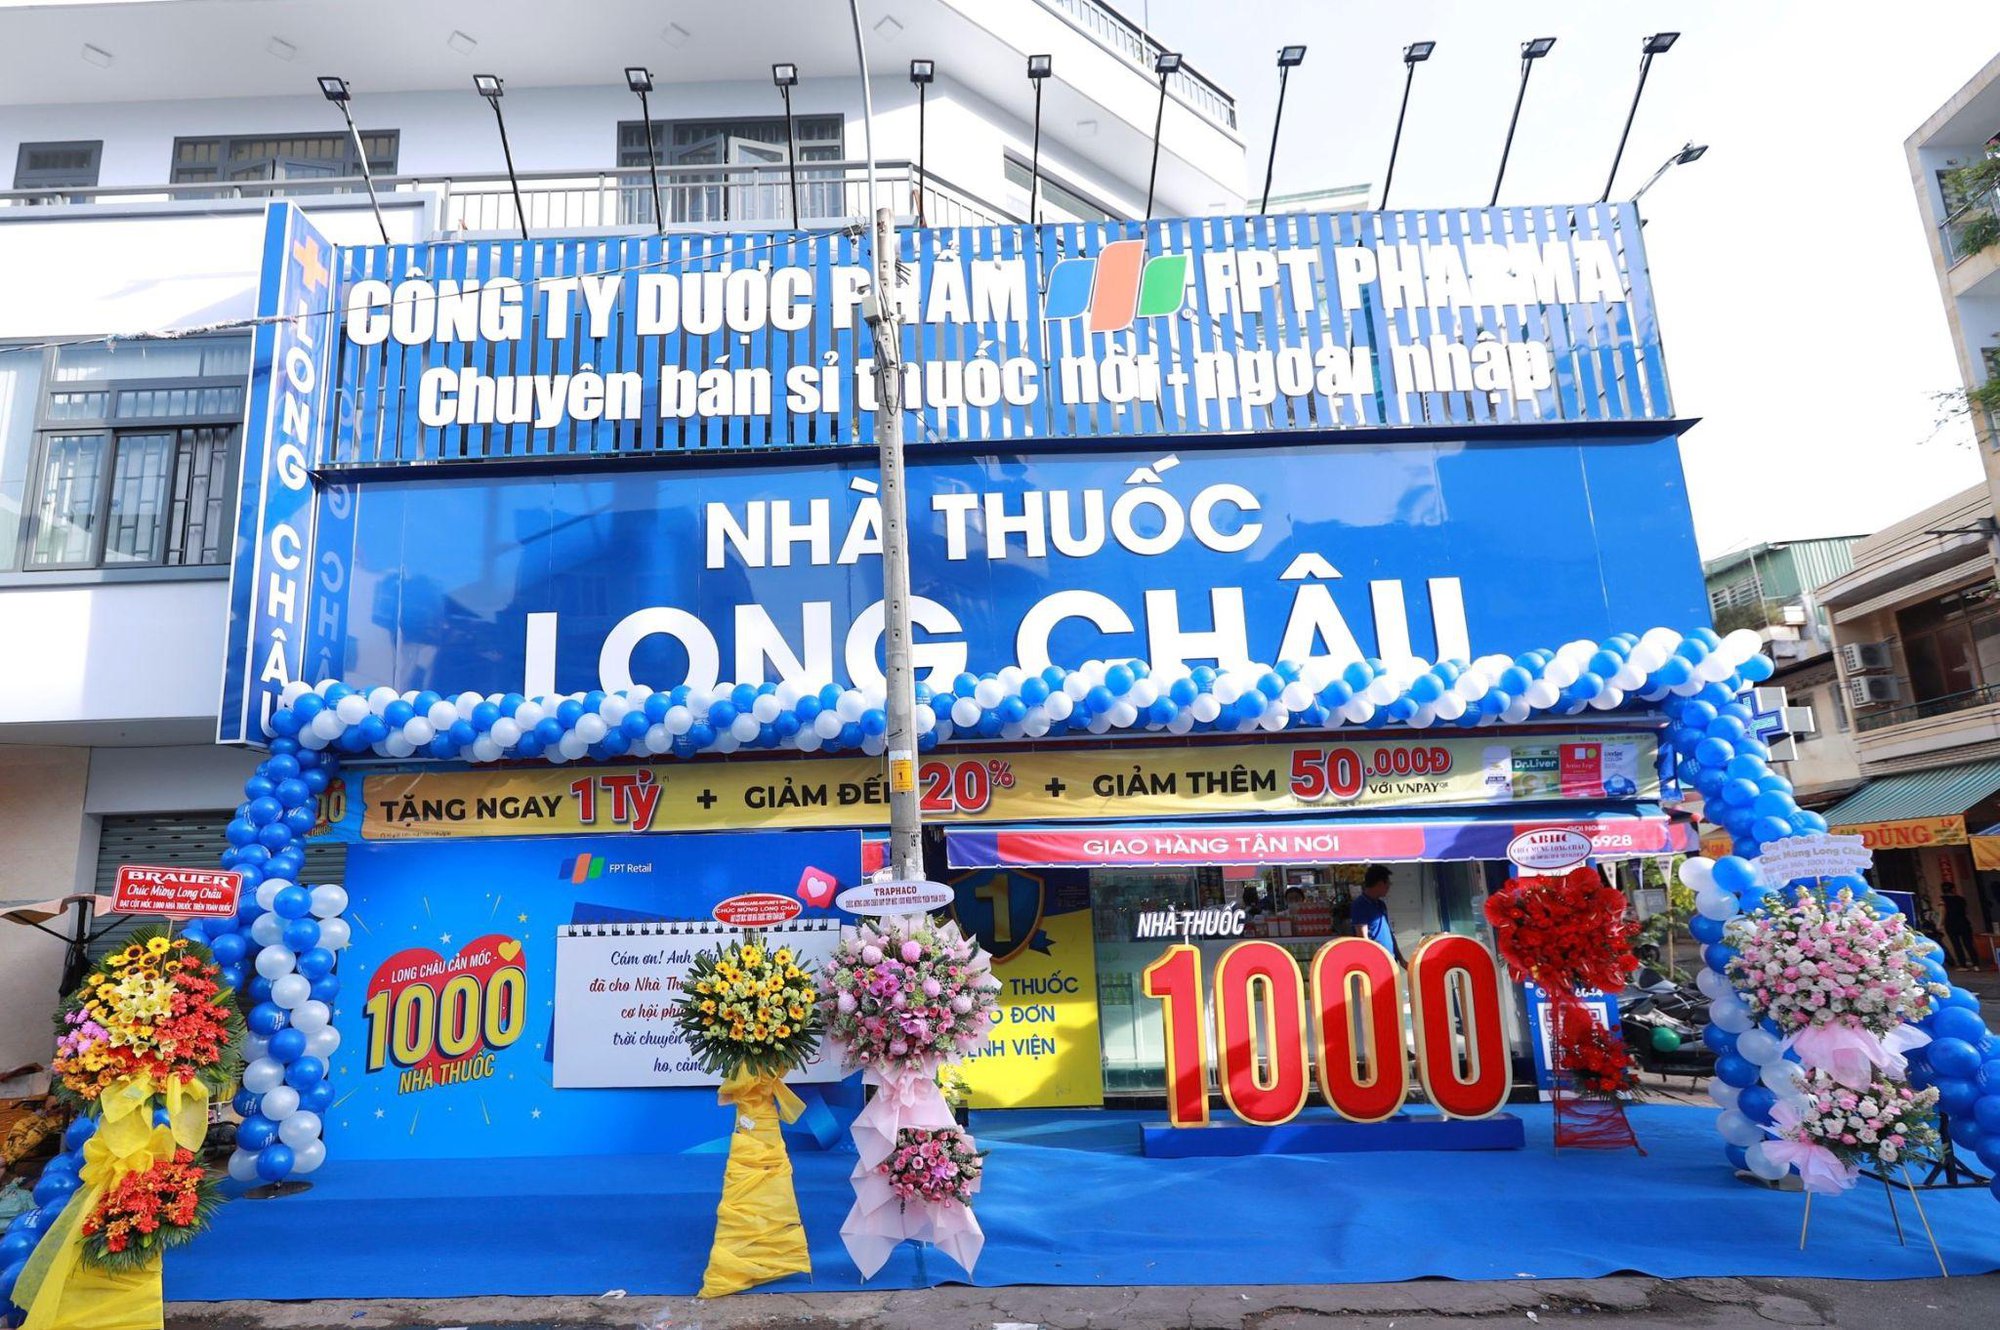 FPT Long Châu “chơi lớn” khi cảm ơn khách hàng bằng những phần quà với tổng giá trị hàng trăm triệu đồng - Ảnh 2.